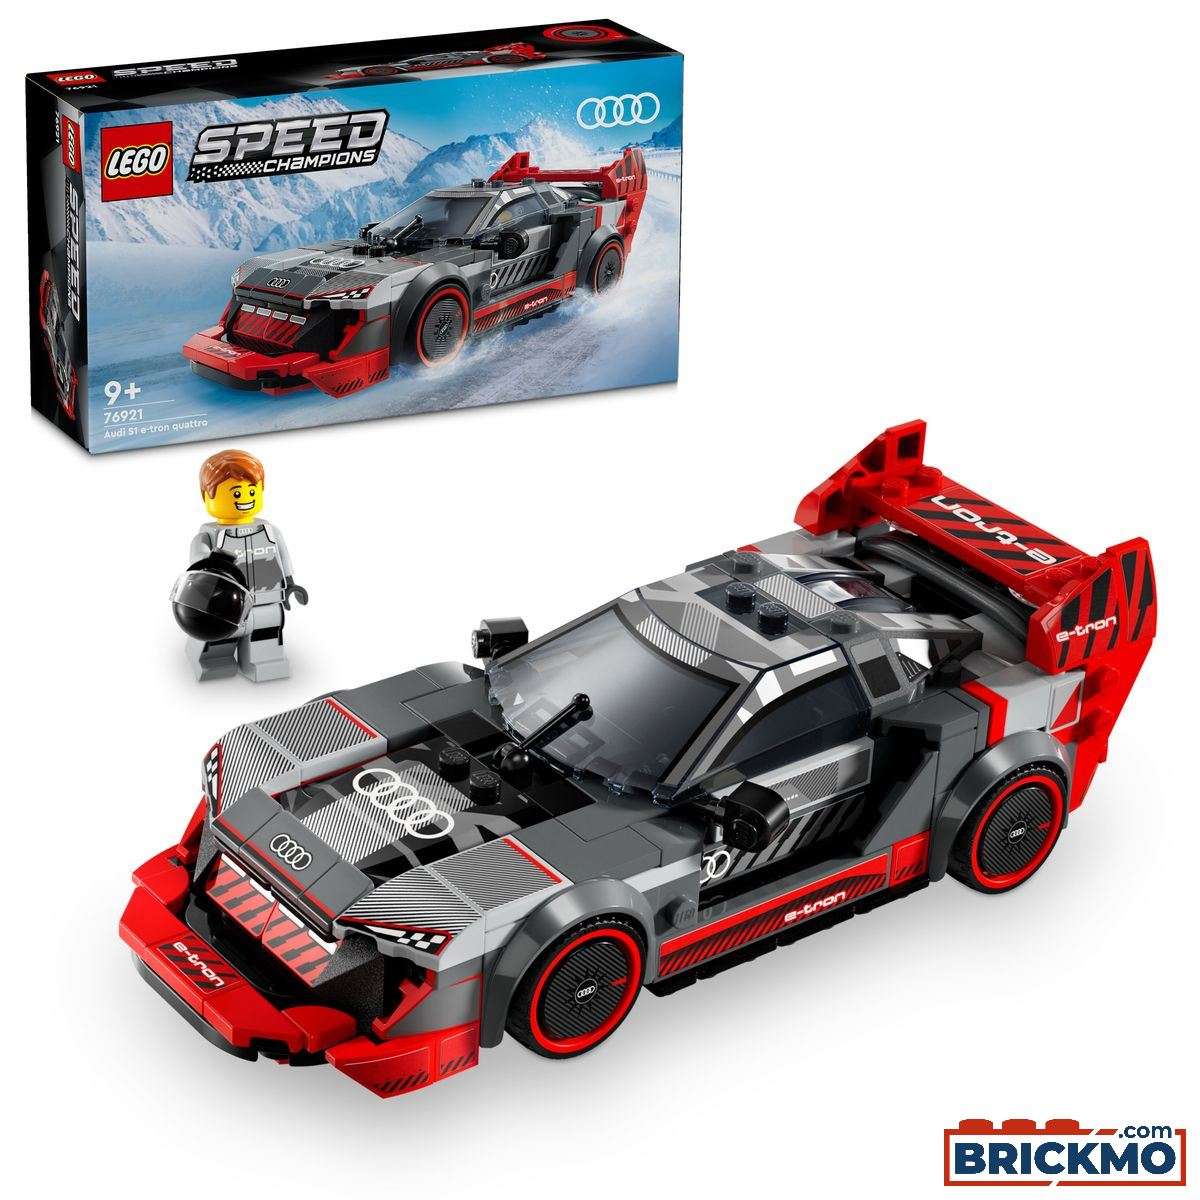 LEGO Speed Champions 76921 Auto da corsa Audi S1 e-tron quattro 76921